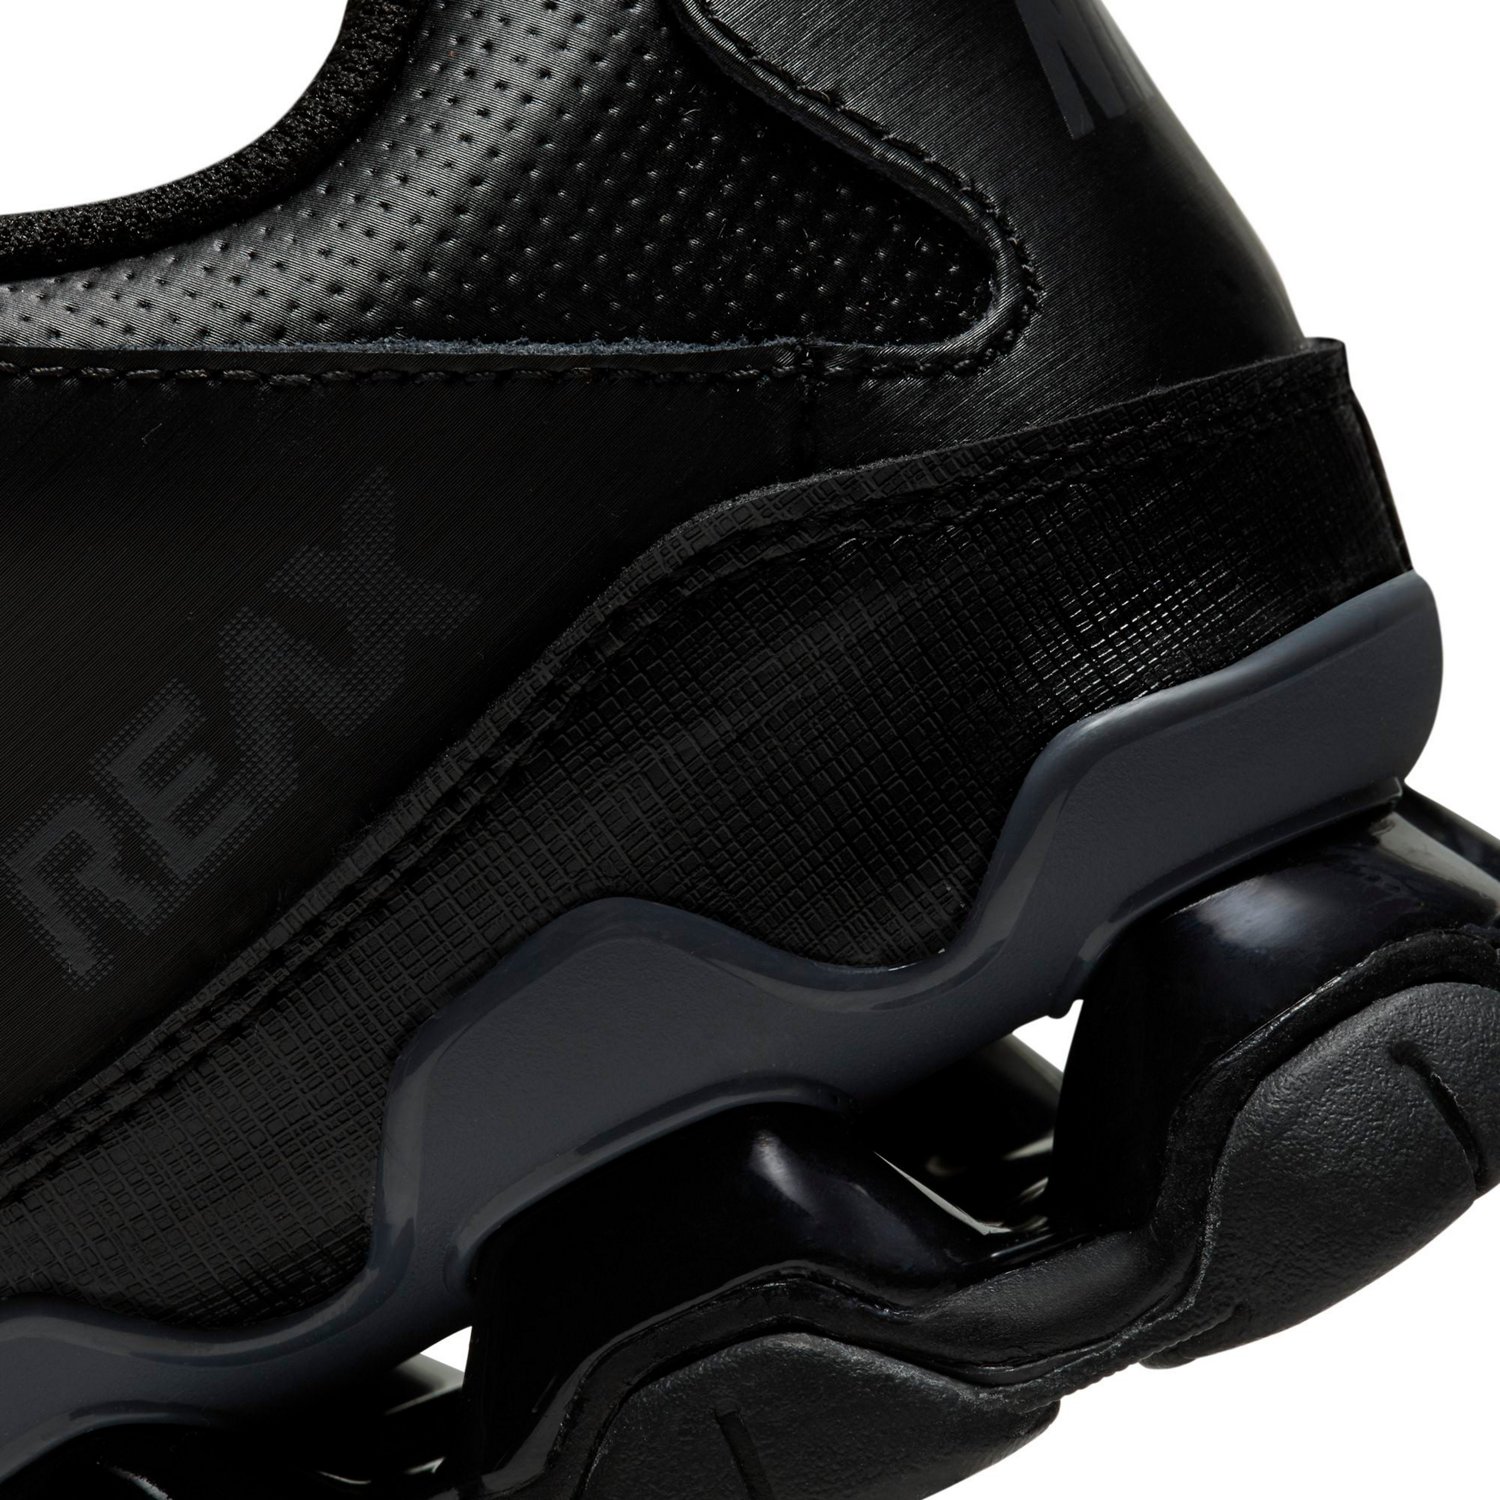 Calzado de entrenamiento para hombre Nike Reax 8 TR.